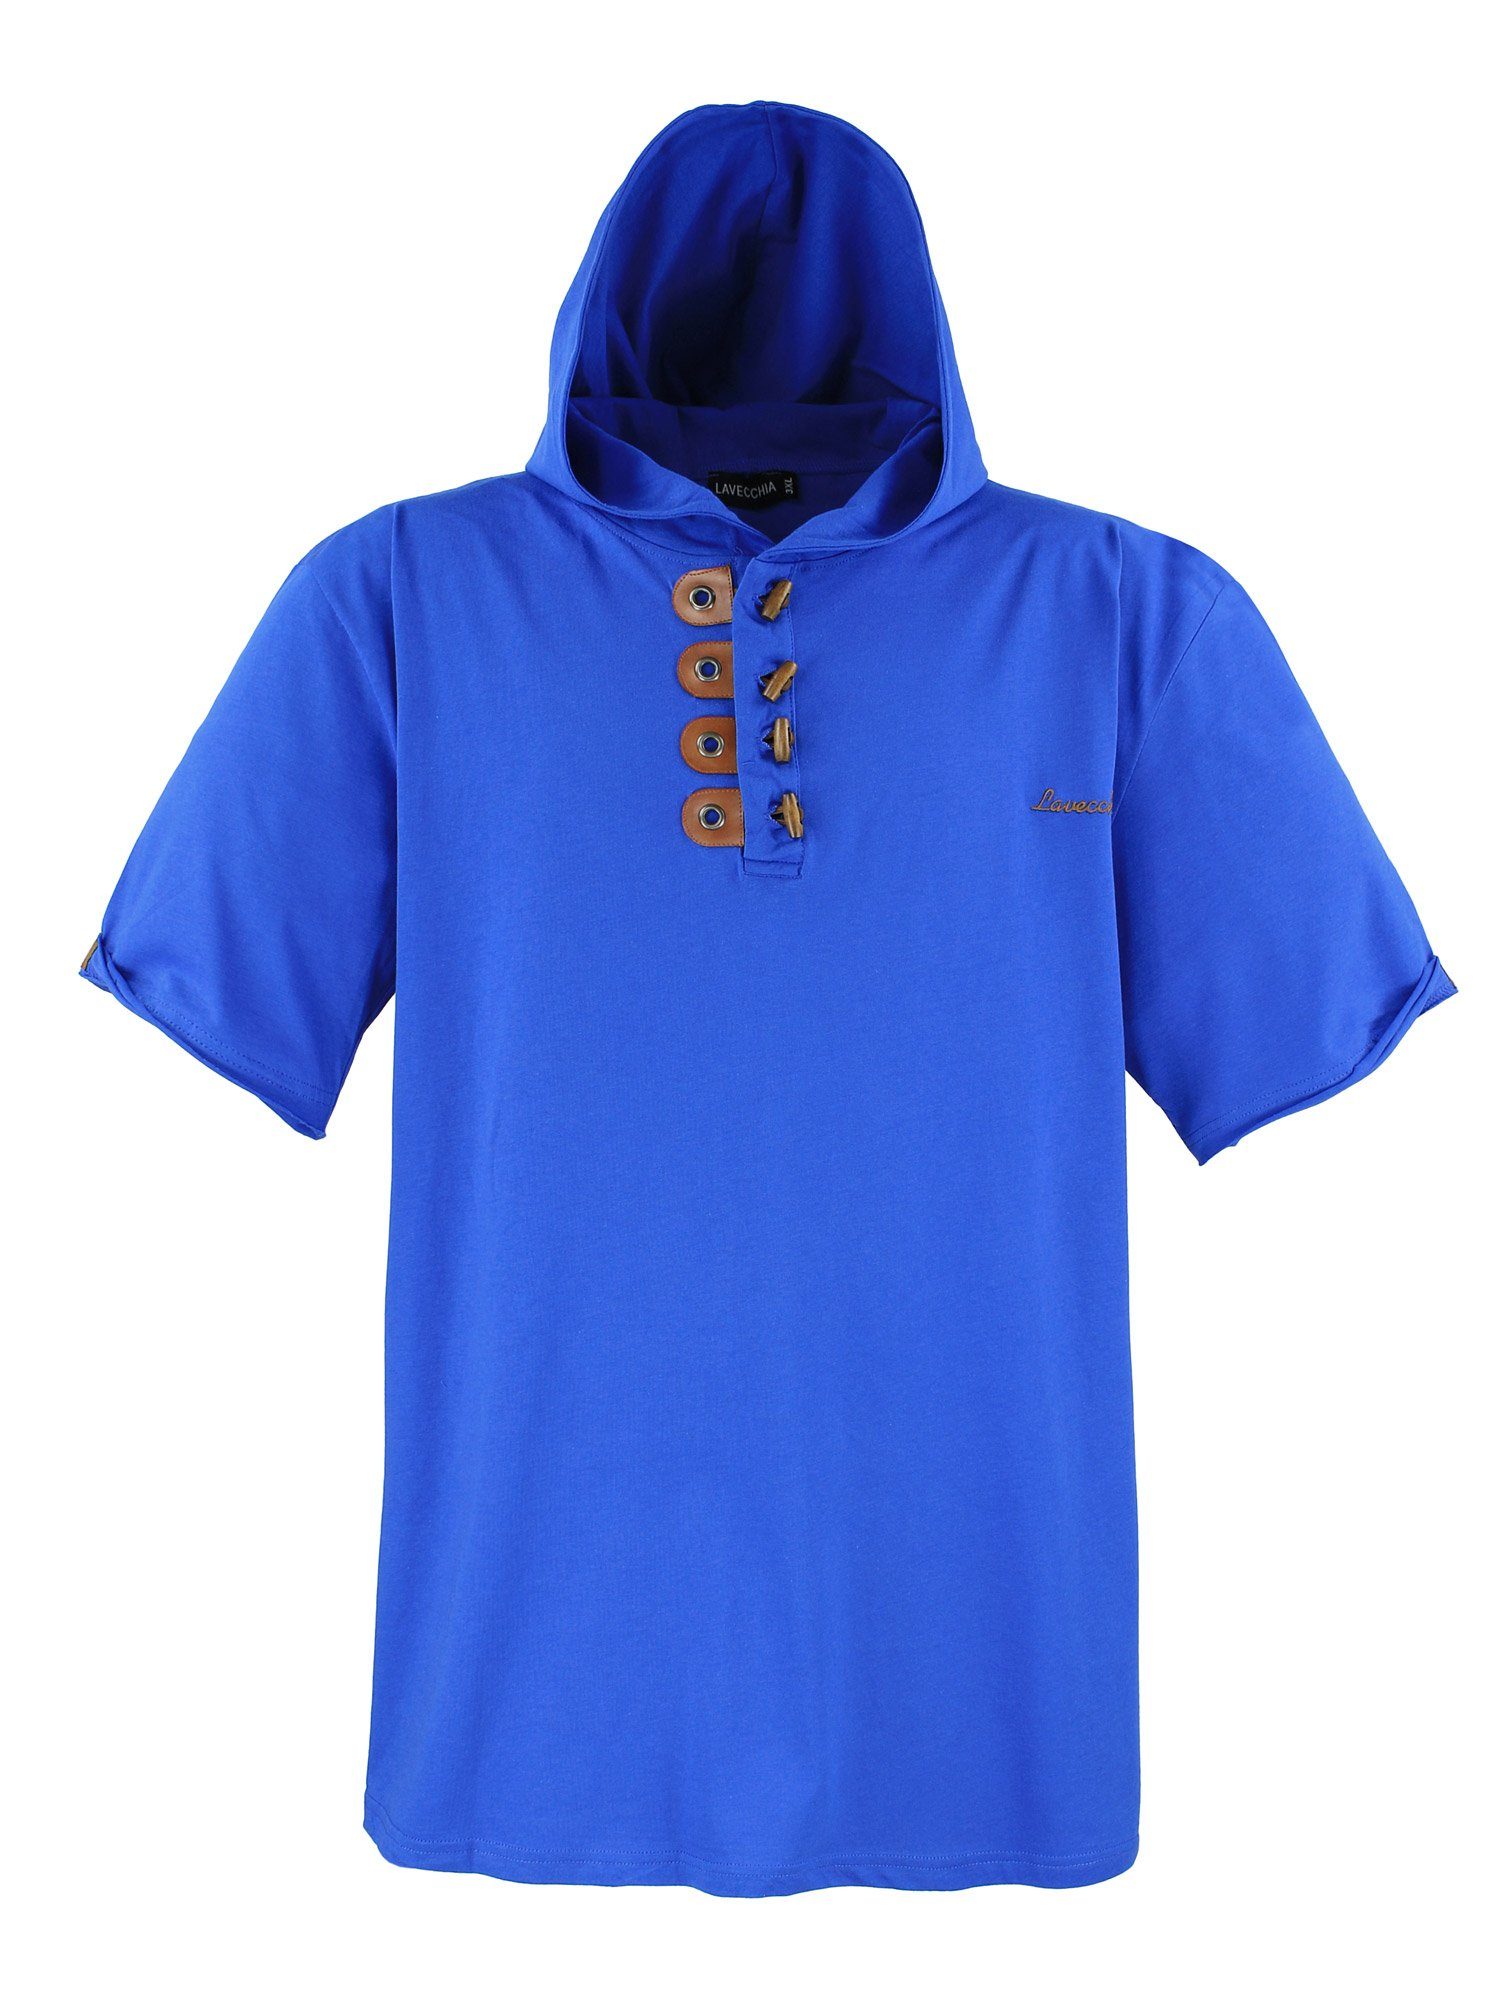 Lavecchia T-Shirt Übergrößen Herren Kapuzenshirt LV-609 Herrenshirt Kapuzen Shirt royalblau | T-Shirts